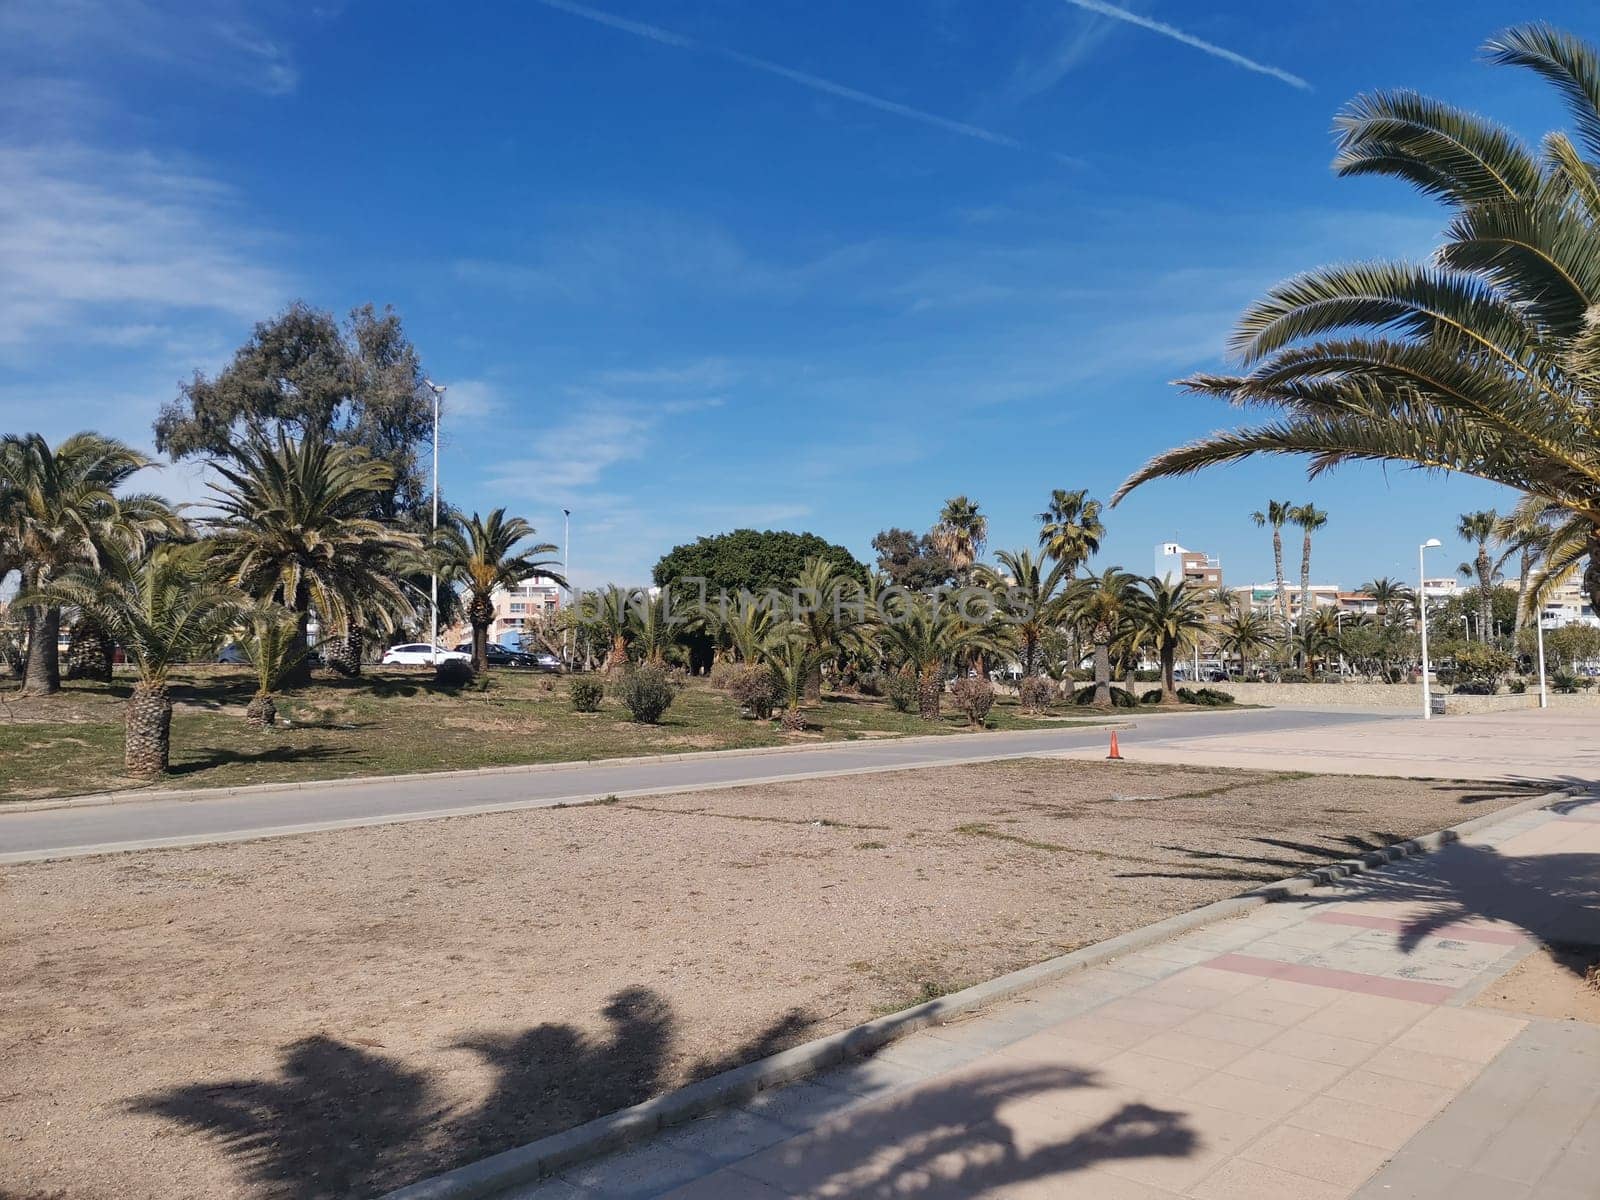 View of the Puerto de Sagunto beach promenade by Fran71